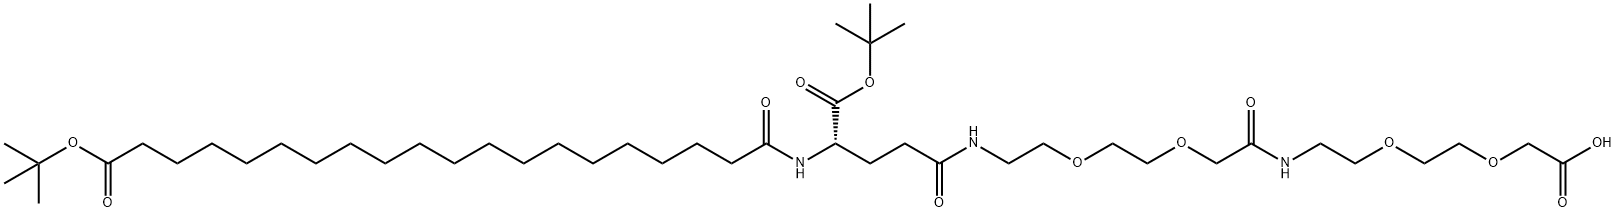 1188328-37-1 索玛鲁肽侧链但16个碳多两个 中间是18个CH2